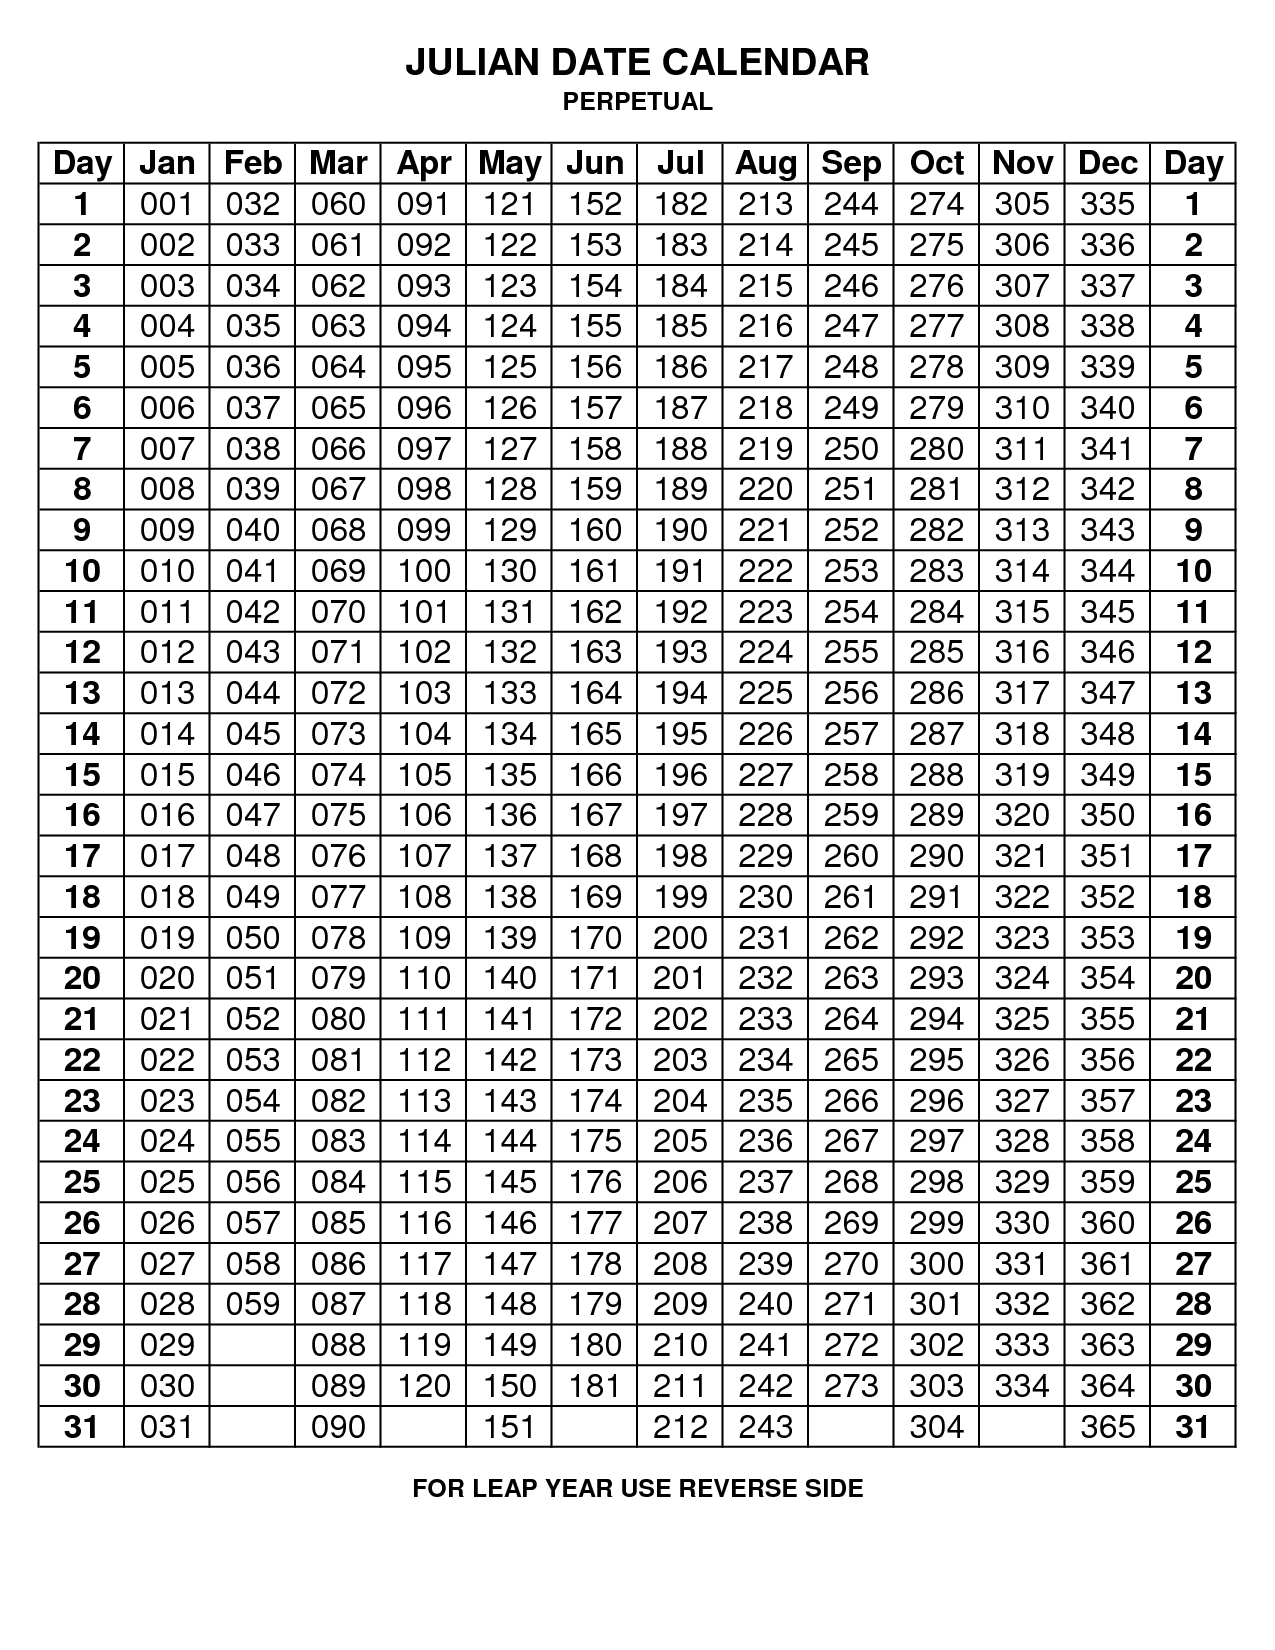 2020 Julian Calendar Non Leap Year | Example Calendar Printable within Non Leap Year Calendar